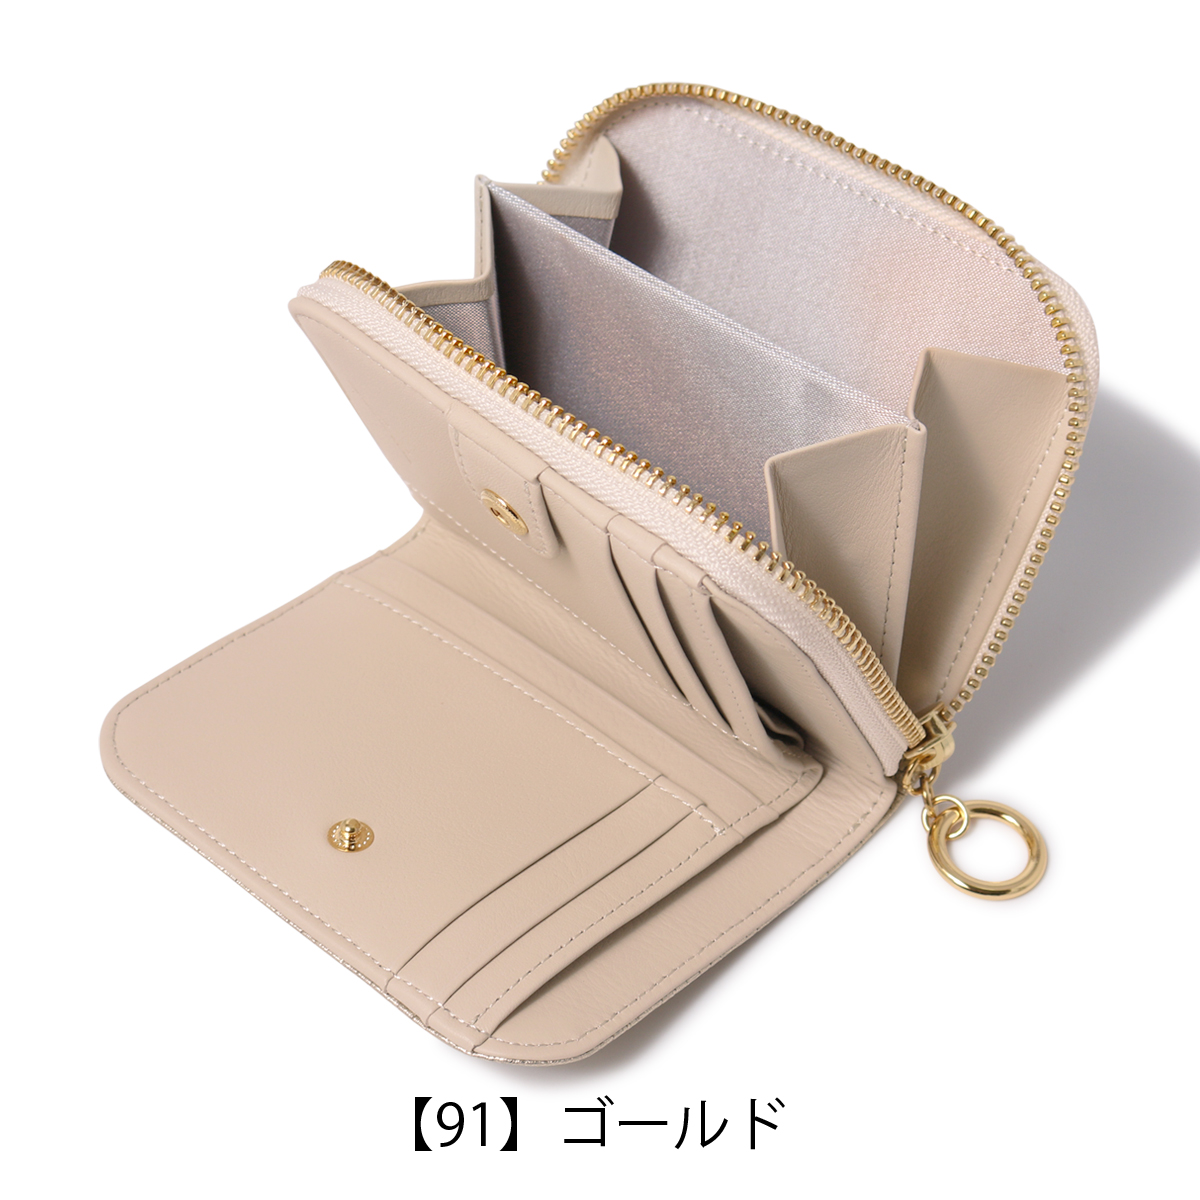 アルカン 二つ折り財布 パネロ レディース 1418-711 日本製 